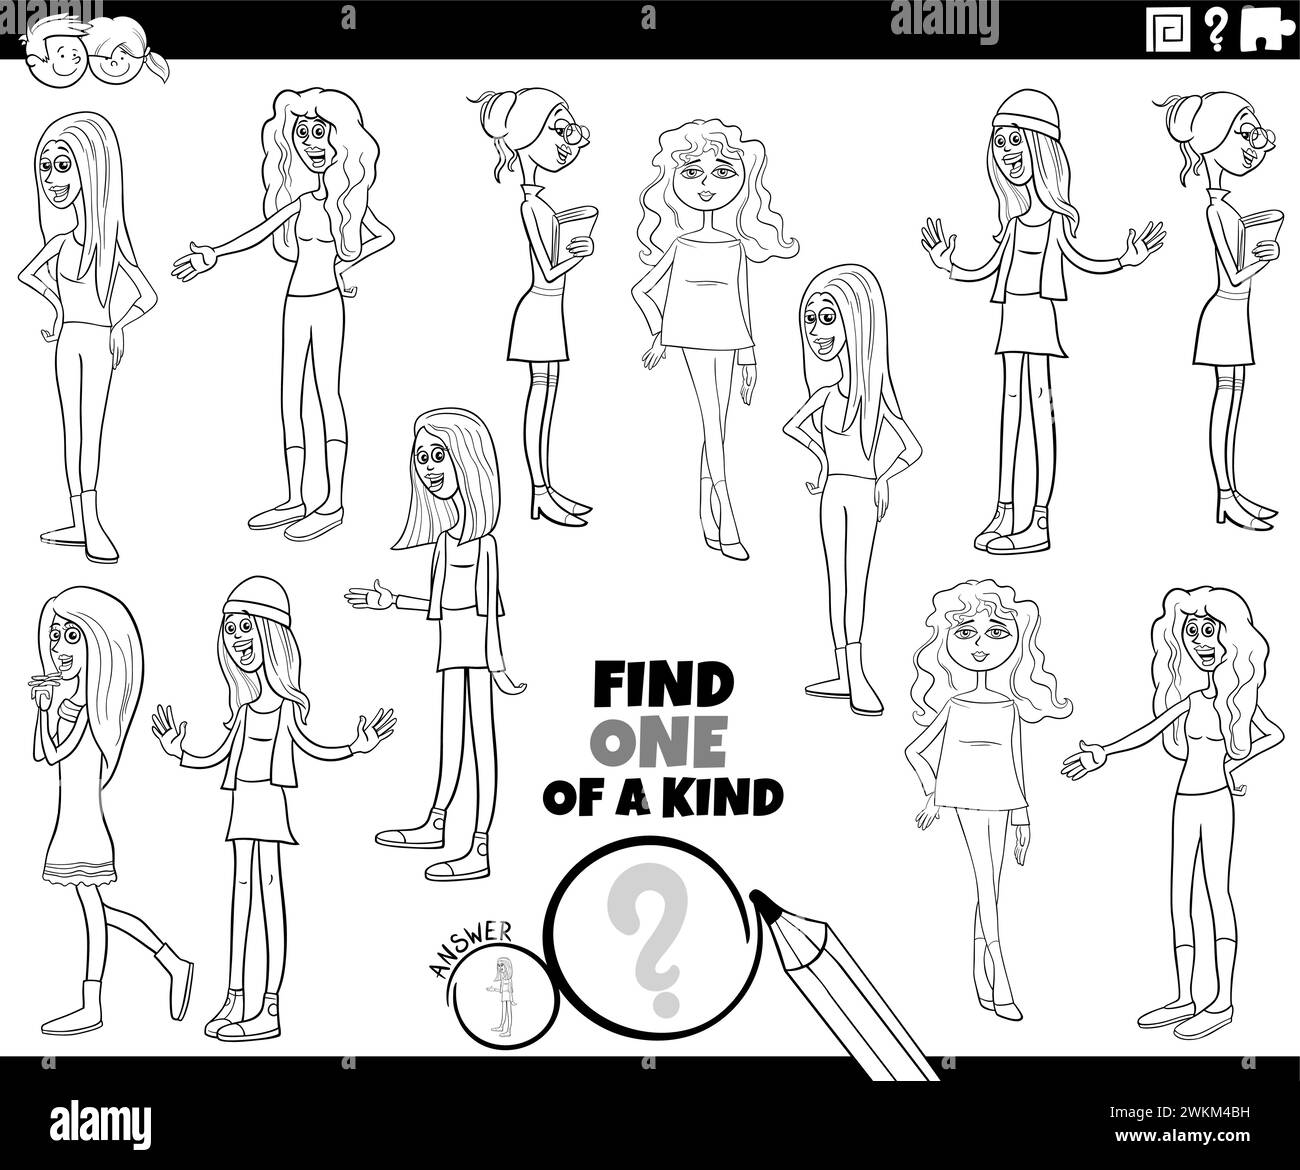 Illustrazione a cartoni animati di Find One of a kind picture Educational game con giovani donne personaggi che colorano pagina Illustrazione Vettoriale